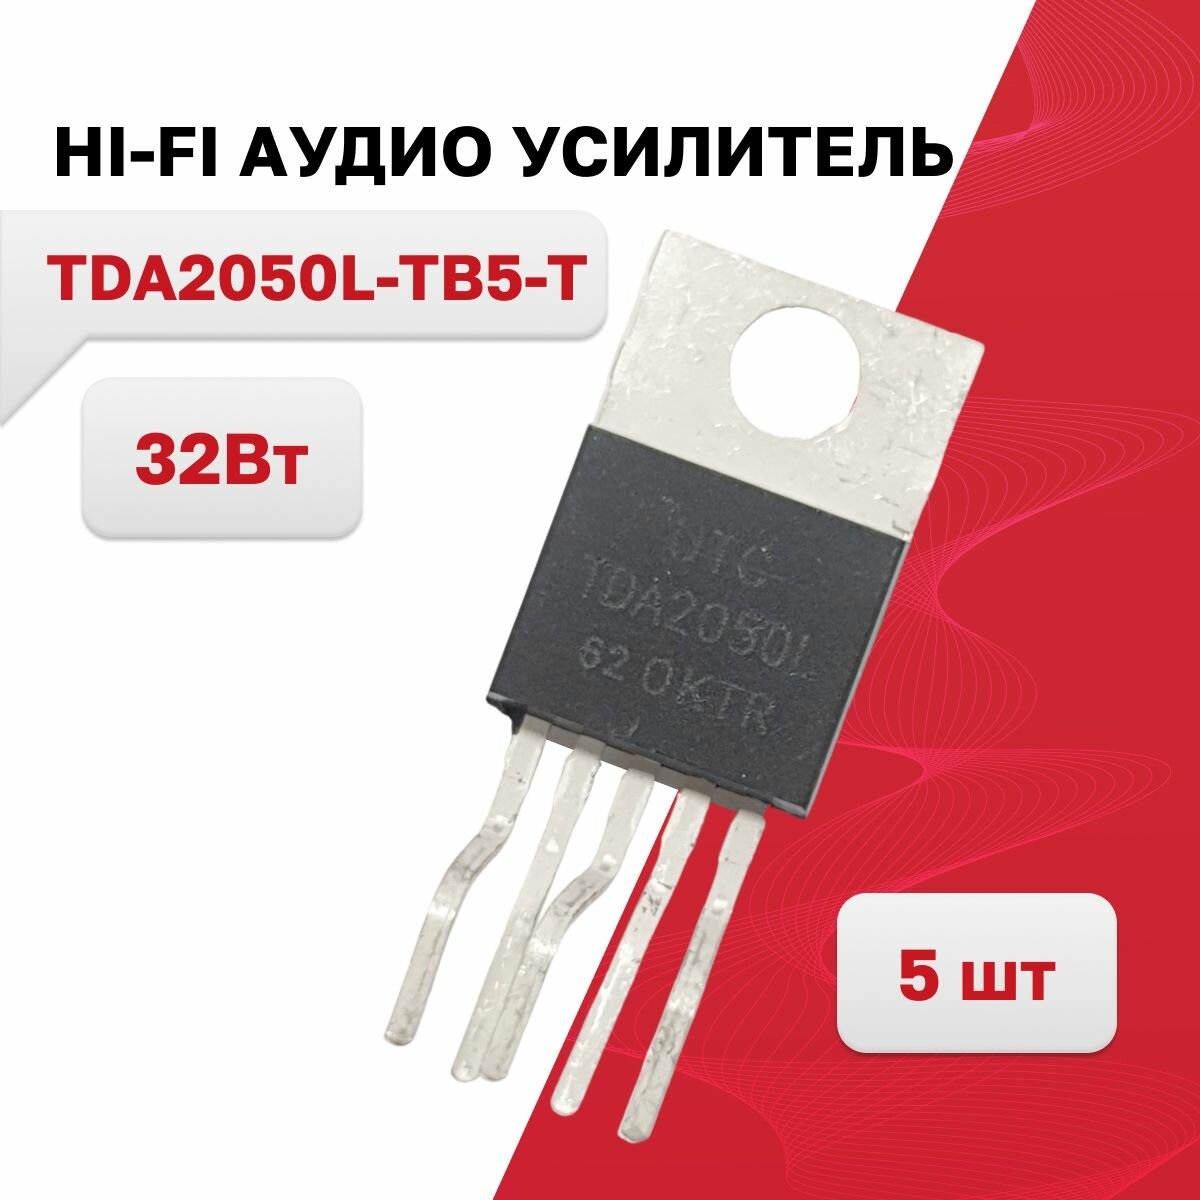 TDA2050L-TB5-T, HI-FI аудио усилитель 32Вт TO-220-5T, 5 шт.